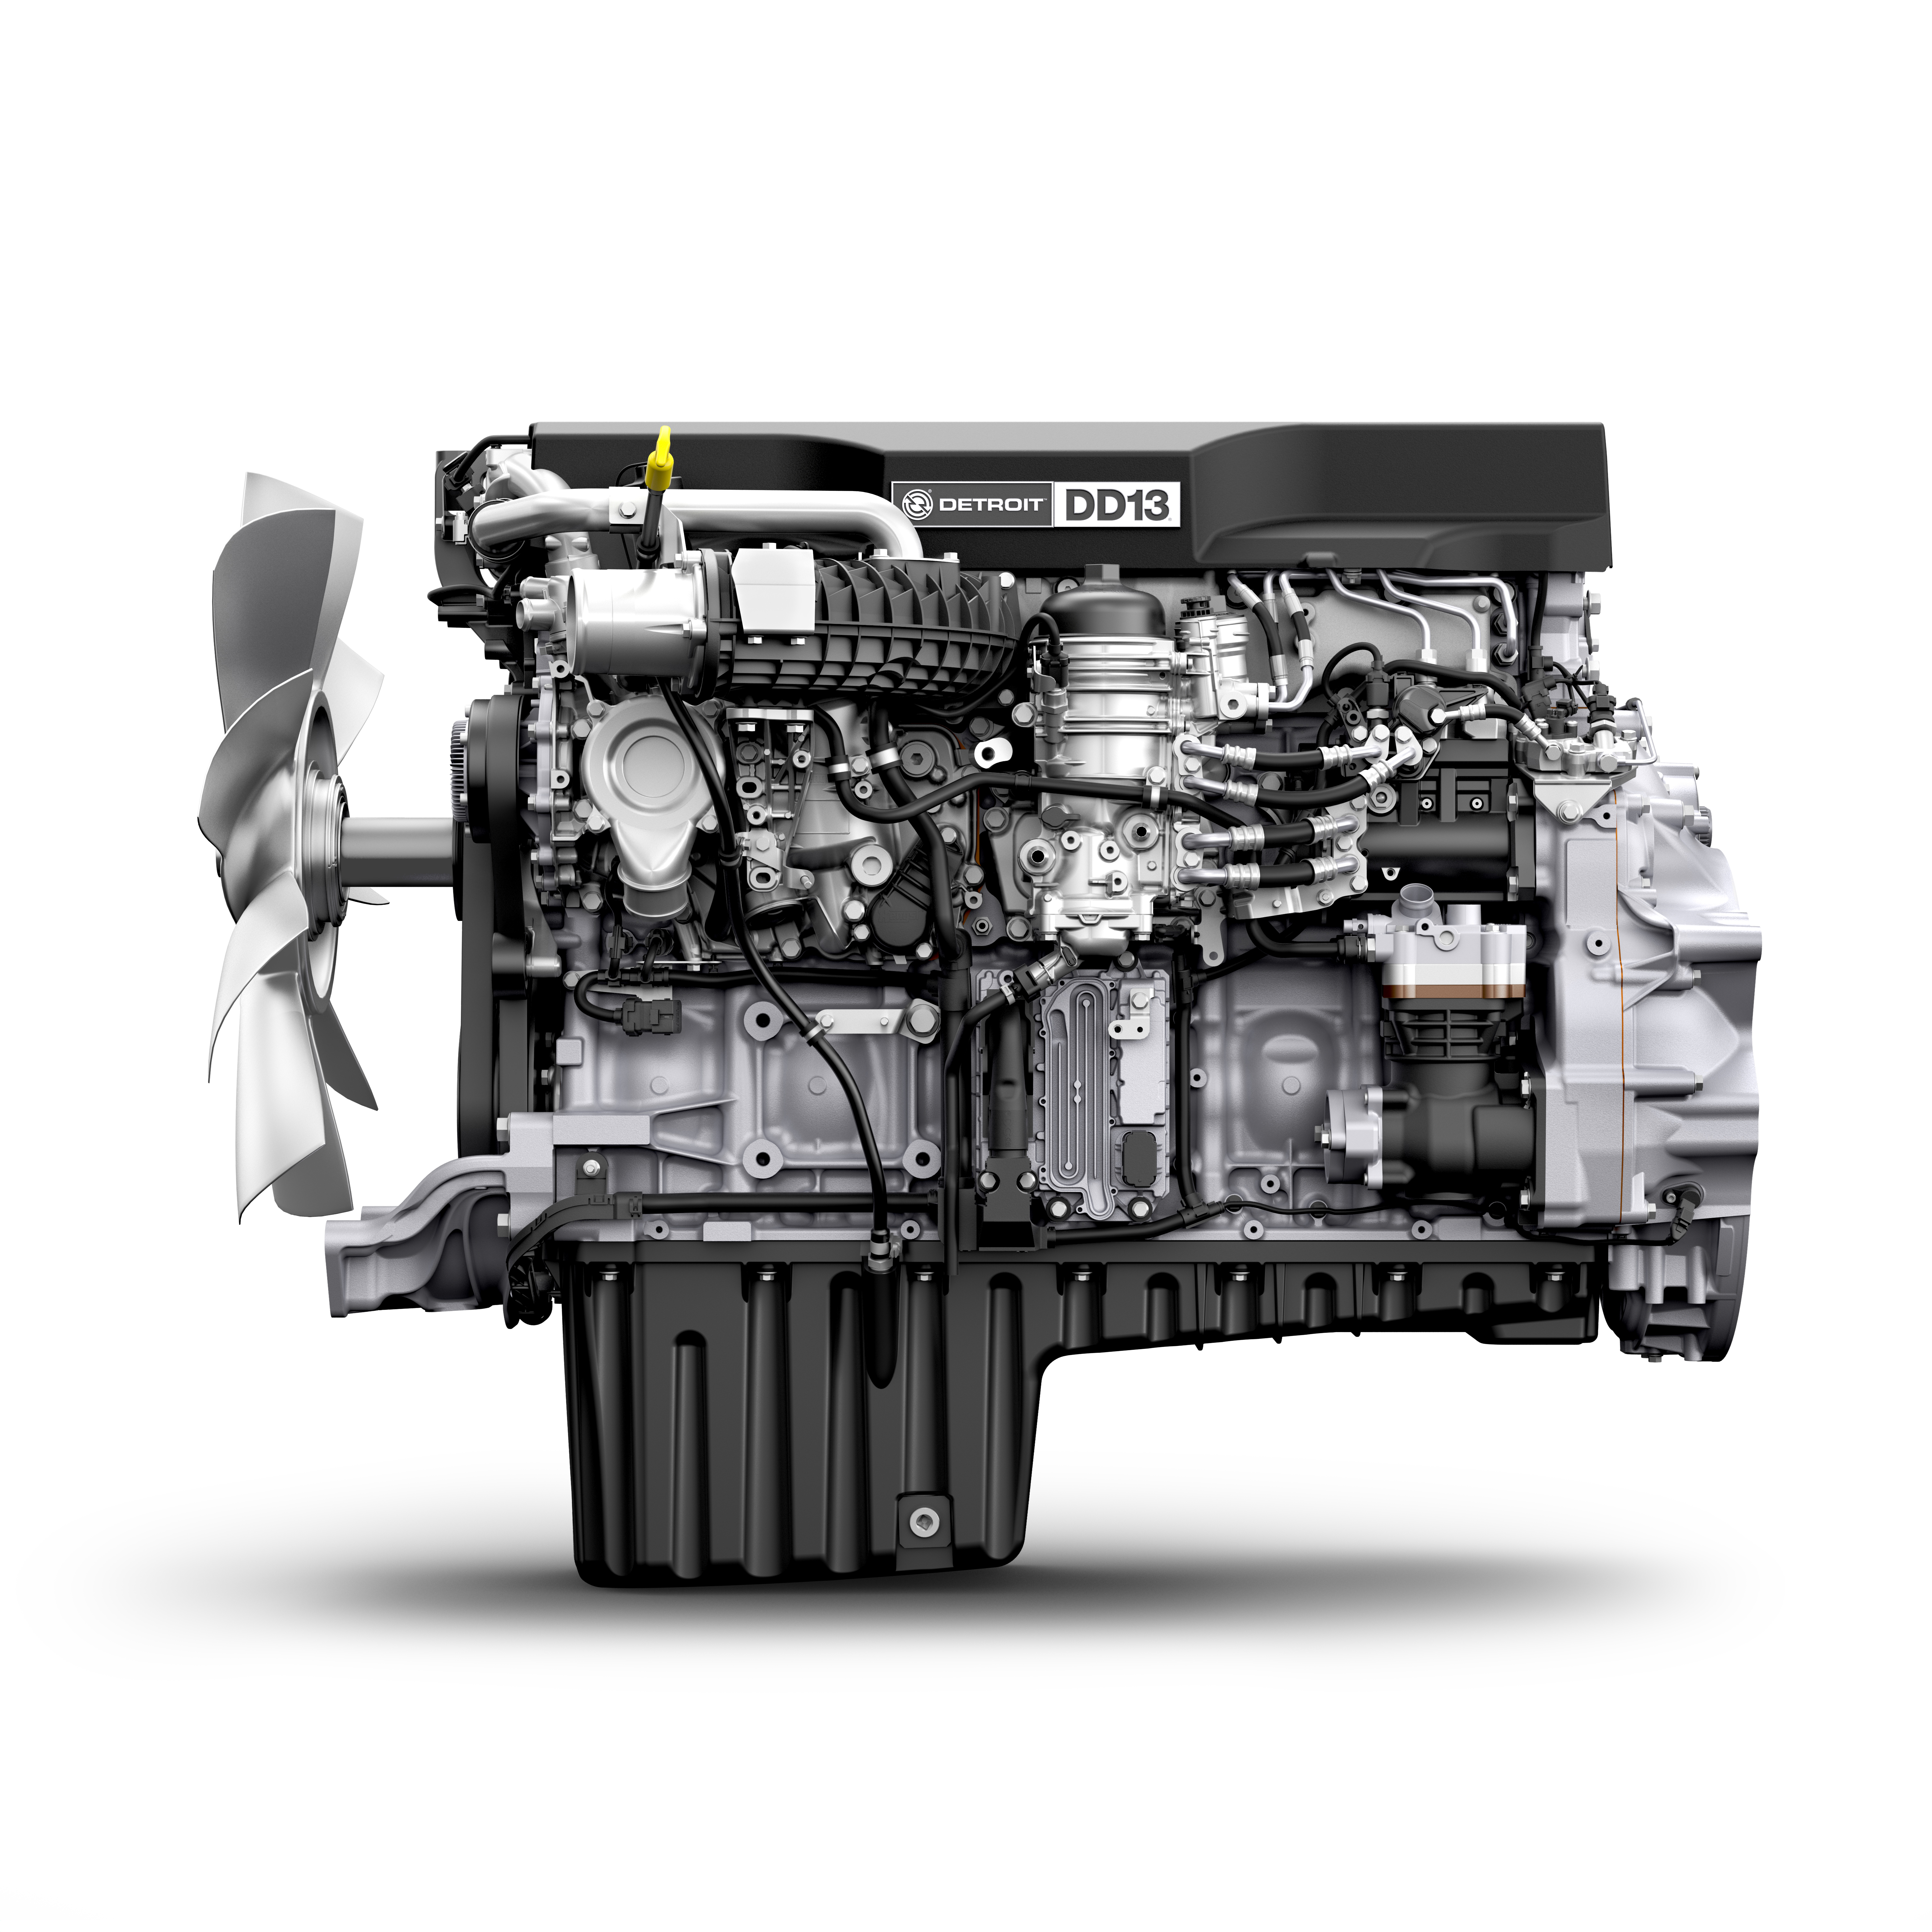 Detroit Diesel Dd16 Engine